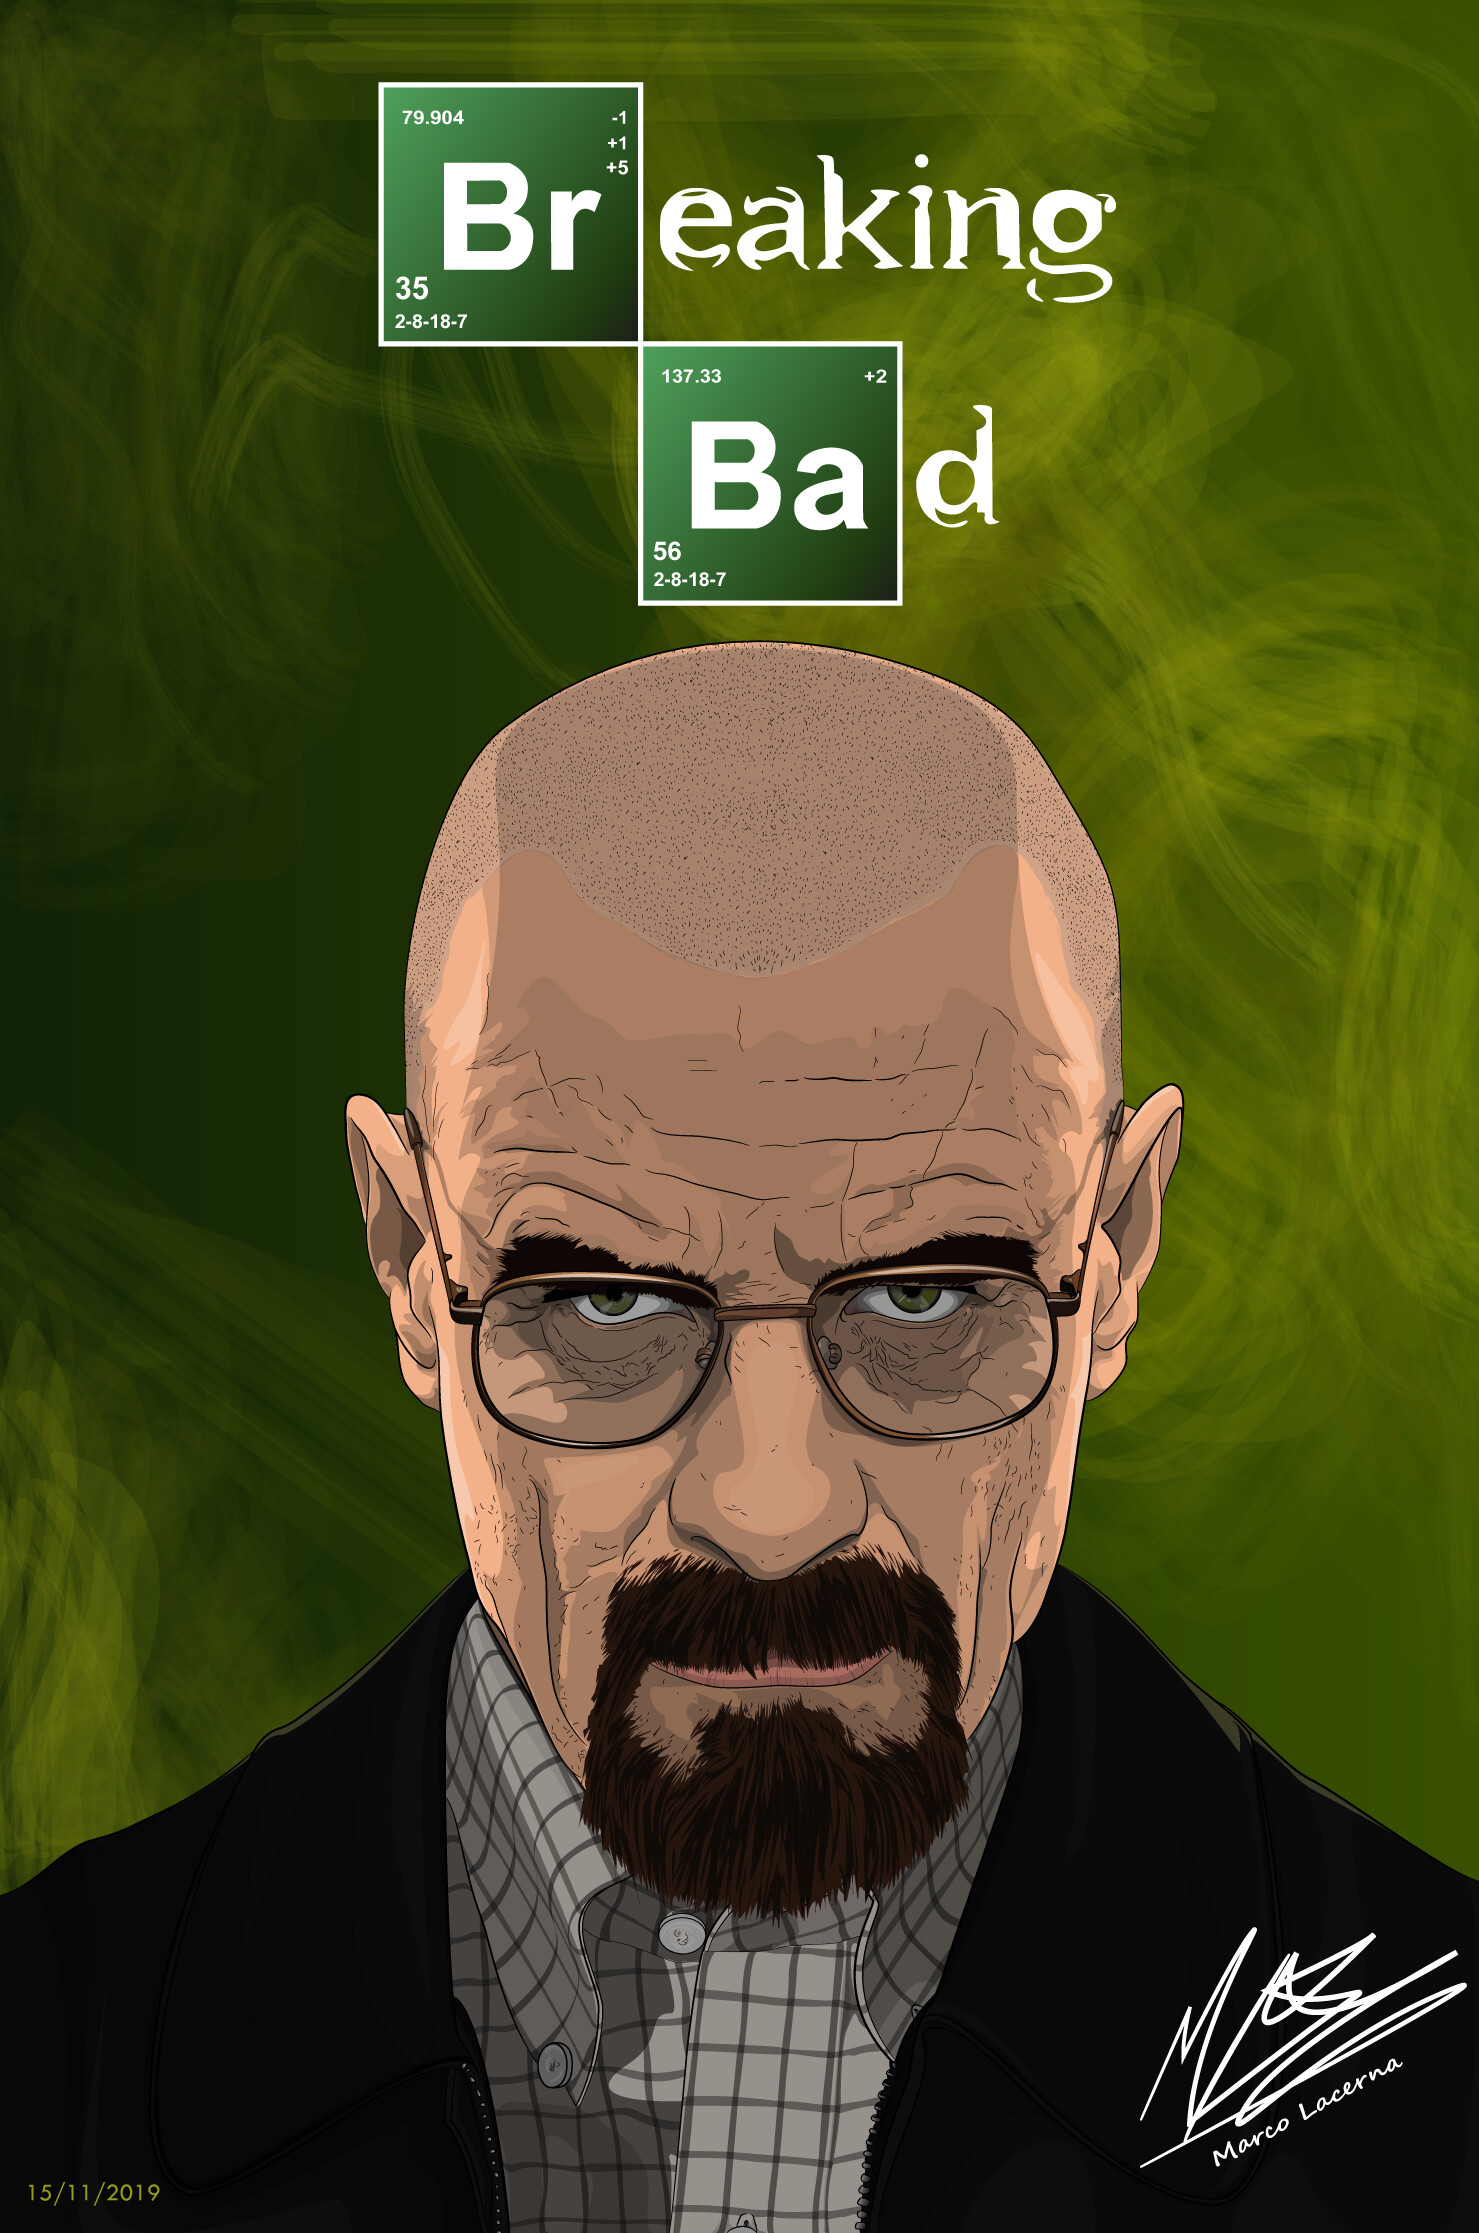 Heisenberg in breaking bad